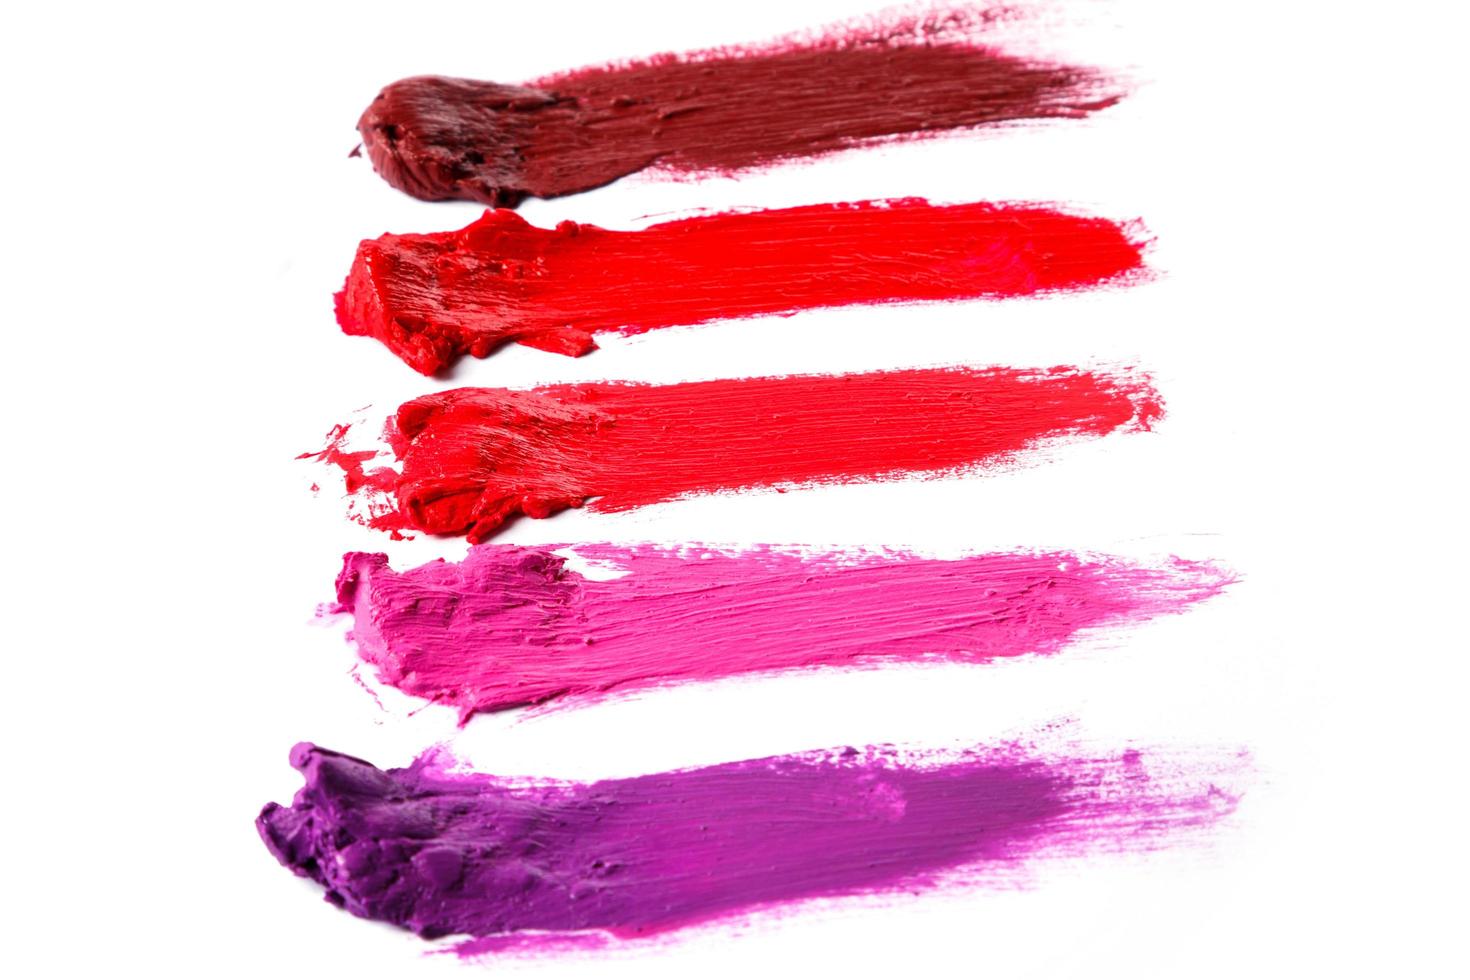 Verschiedene mehrfarbige Proben eines verschmierten Lippenstifts foto